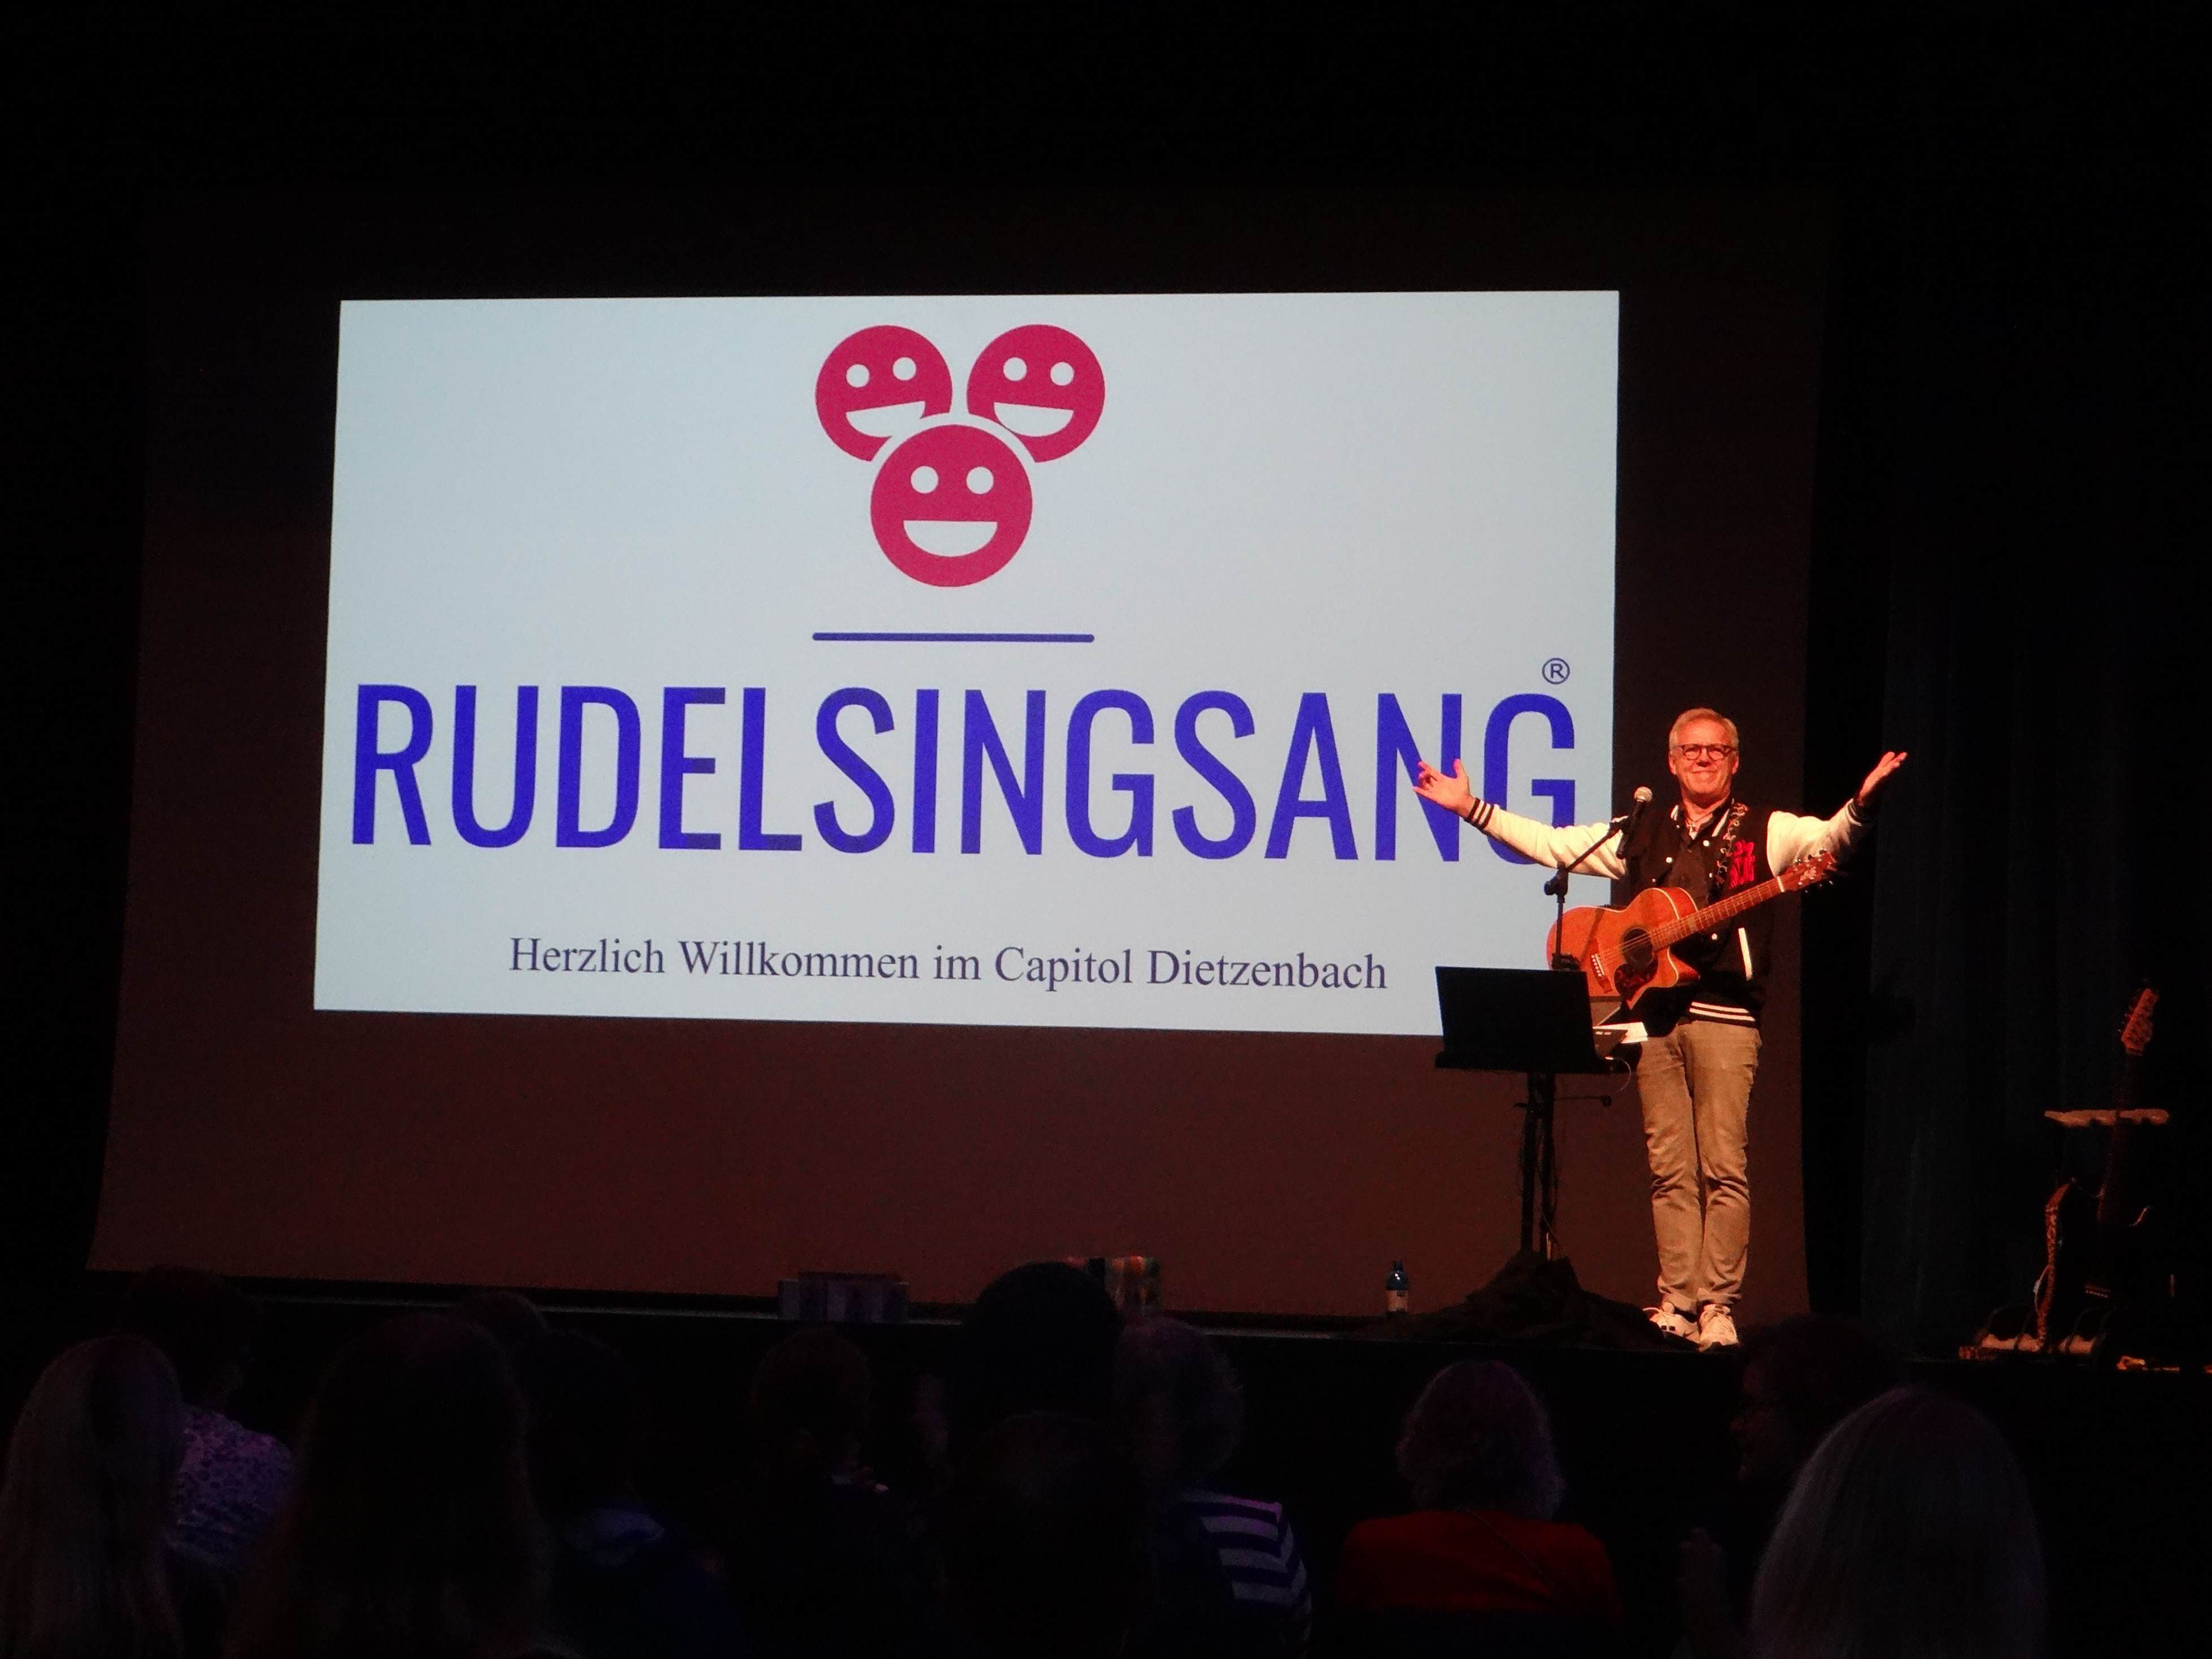 (c) Rudel-sing-sang.com